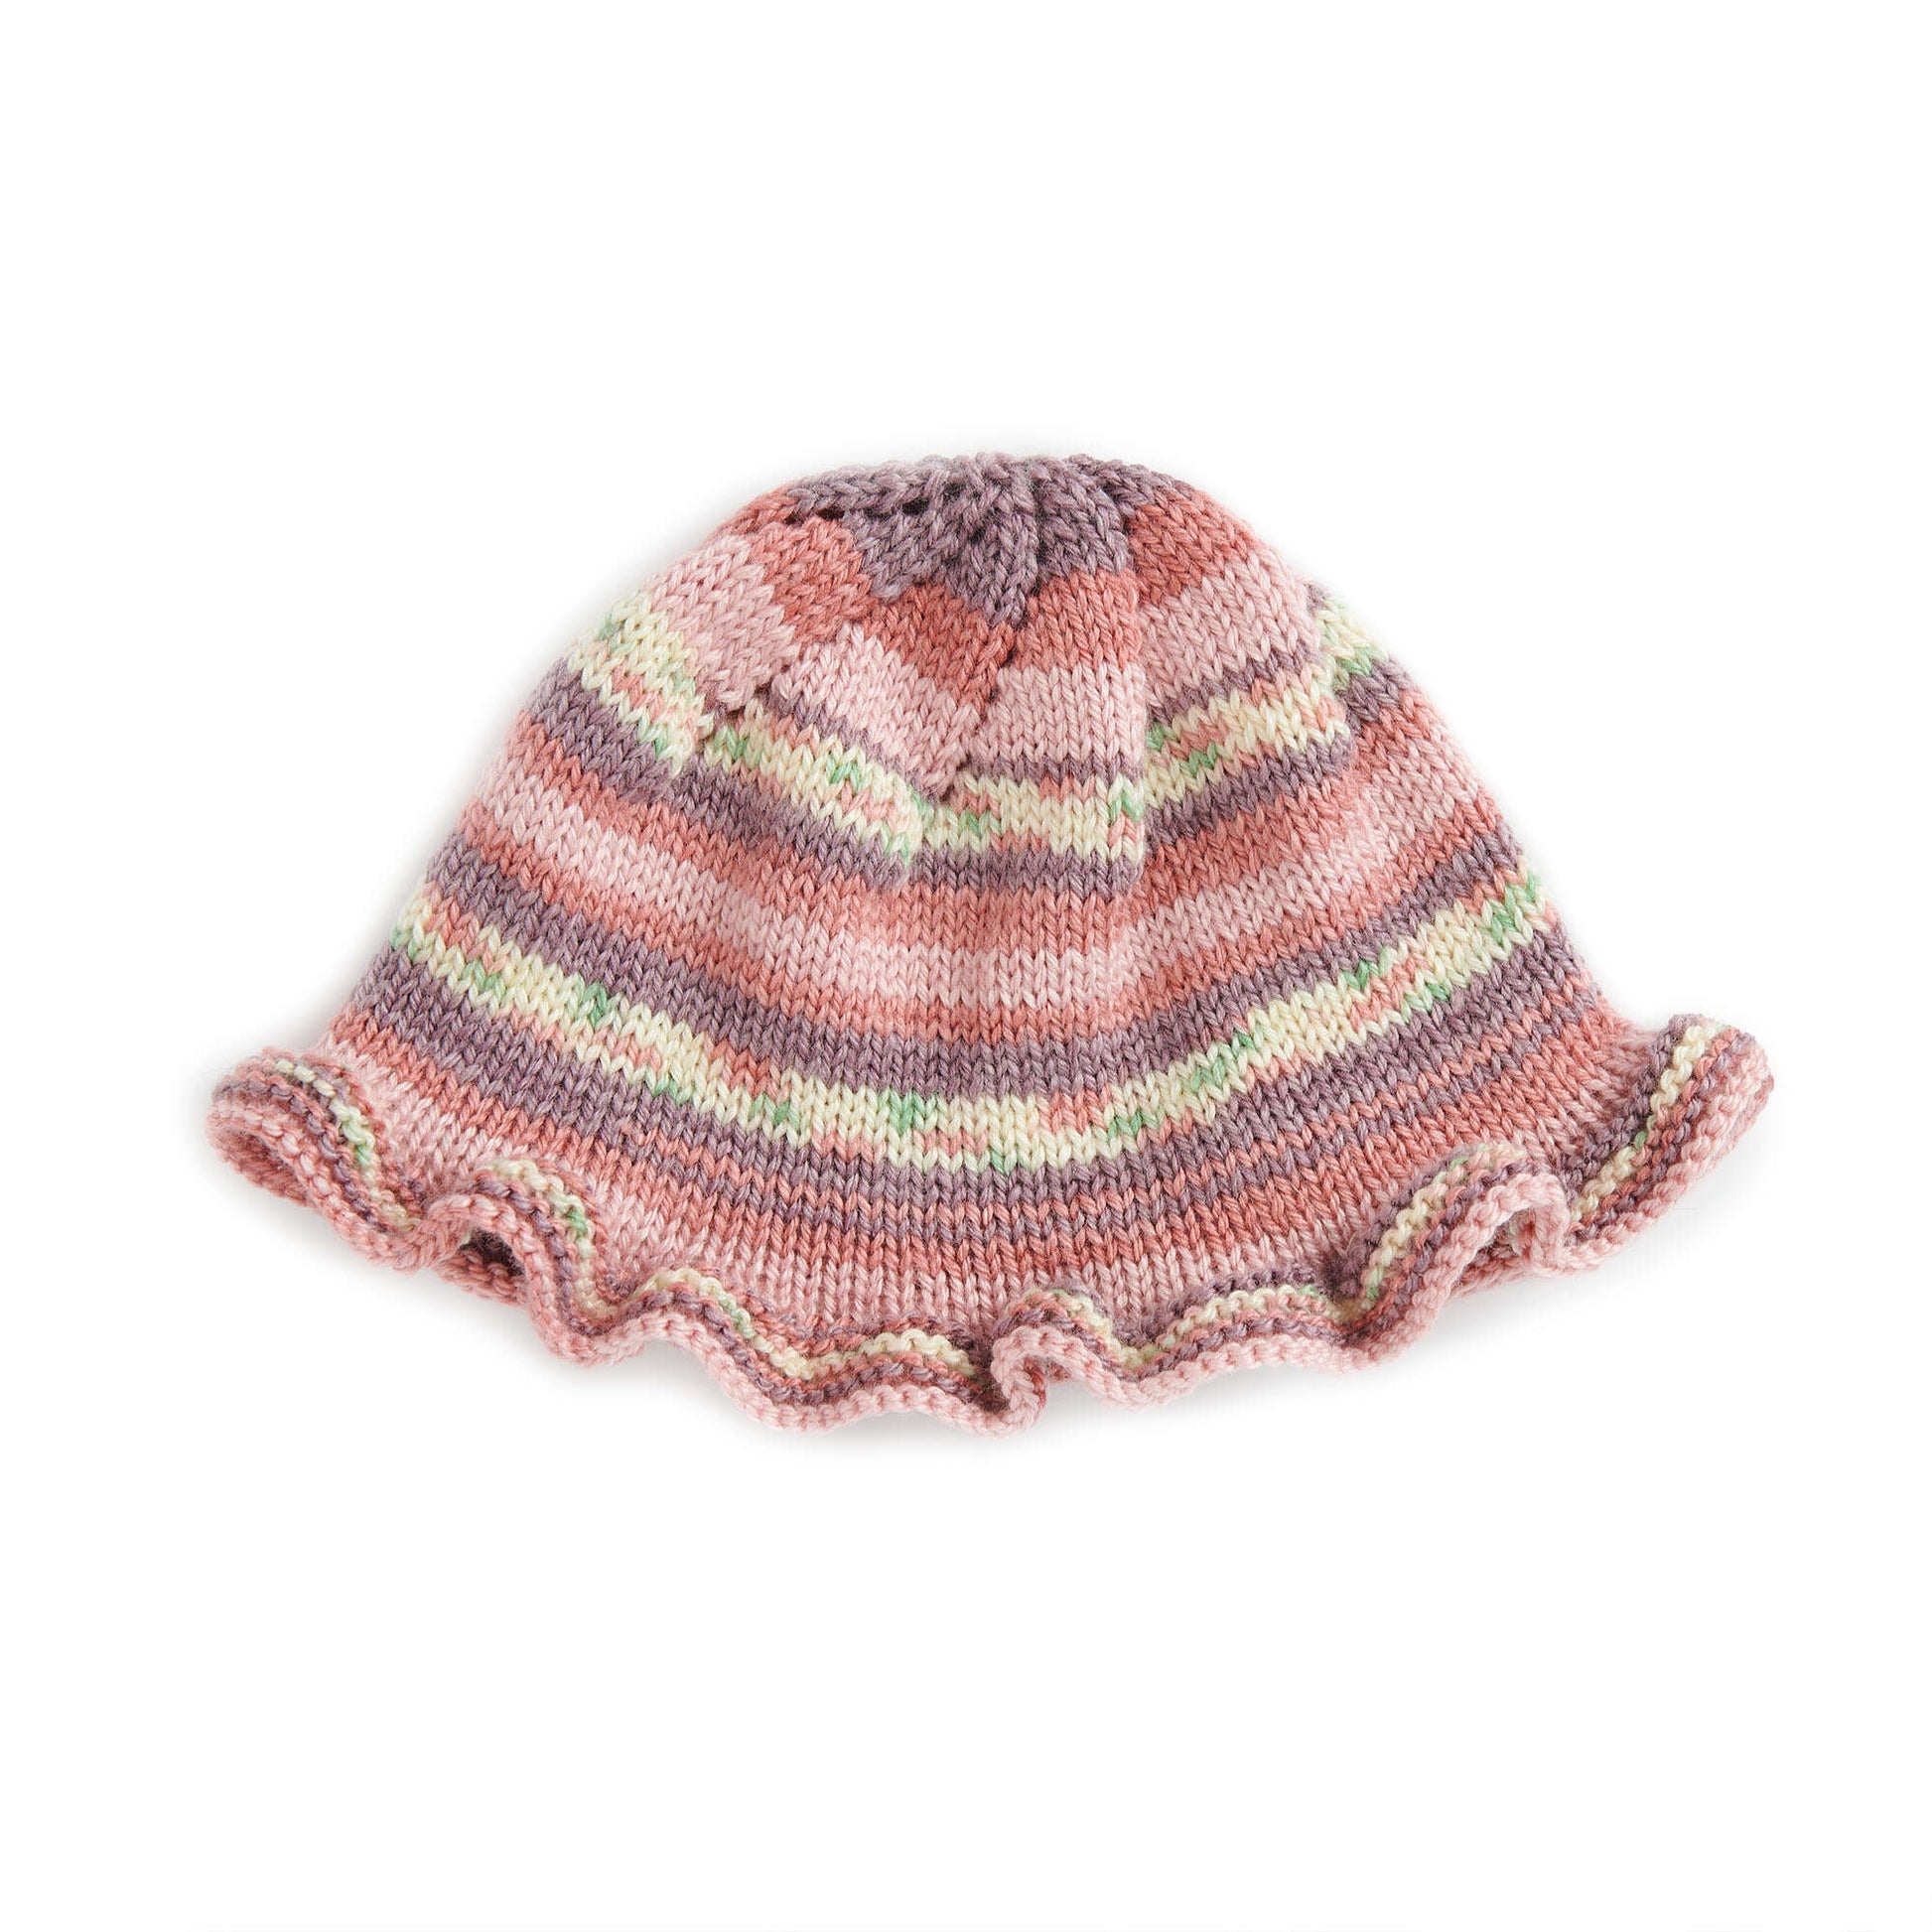 Free Bernat Knit Ruffle Baby Hat Pattern